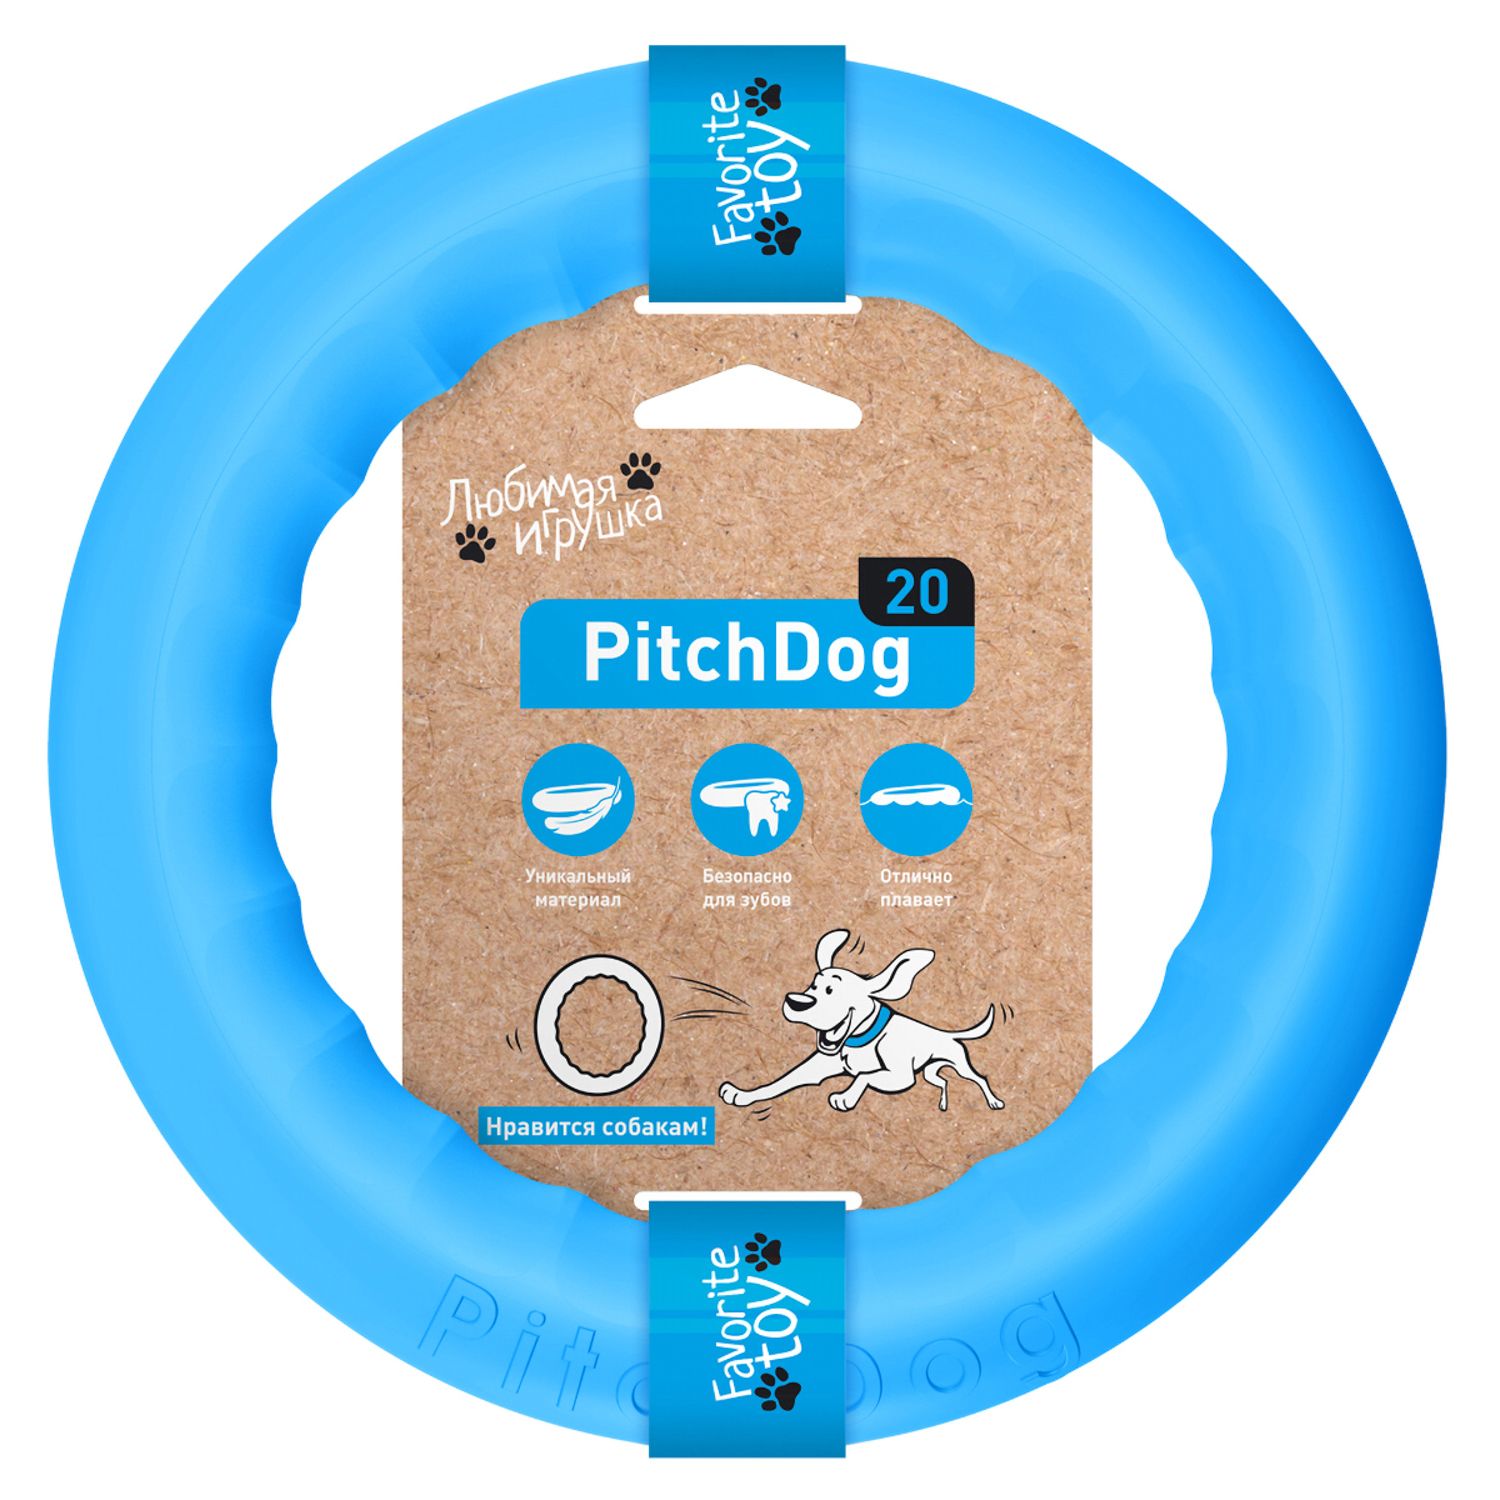 PitchDog 20 - Игровое кольцо для апортировки d 20 голубое